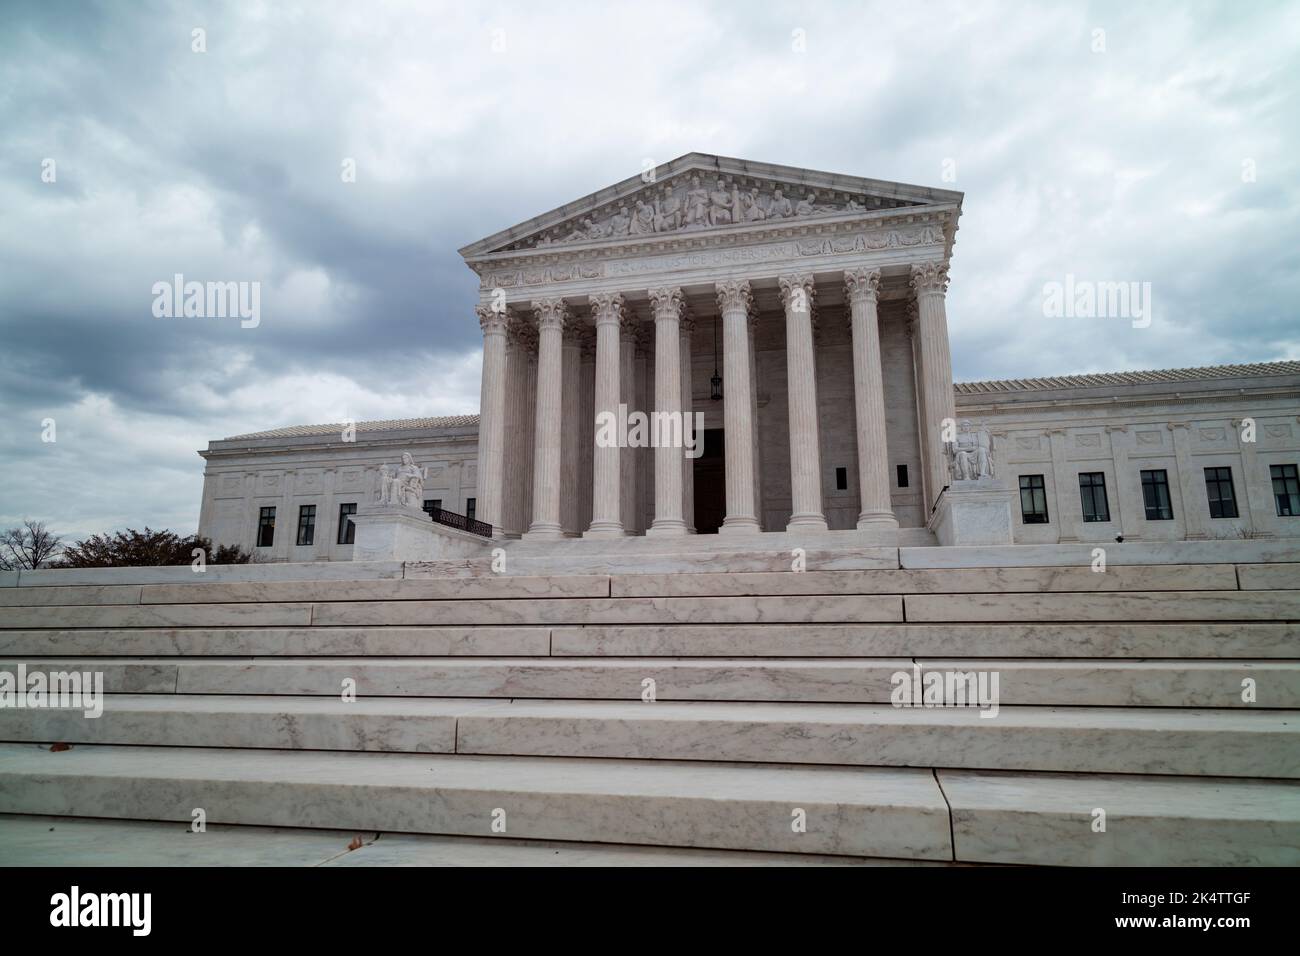 El edificio del Tribunal Supremo de los Estados Unidos en Washington, DC, se ve desde la entrada oeste en un día gris y nublado de invierno. No se ve a nadie. Foto de stock